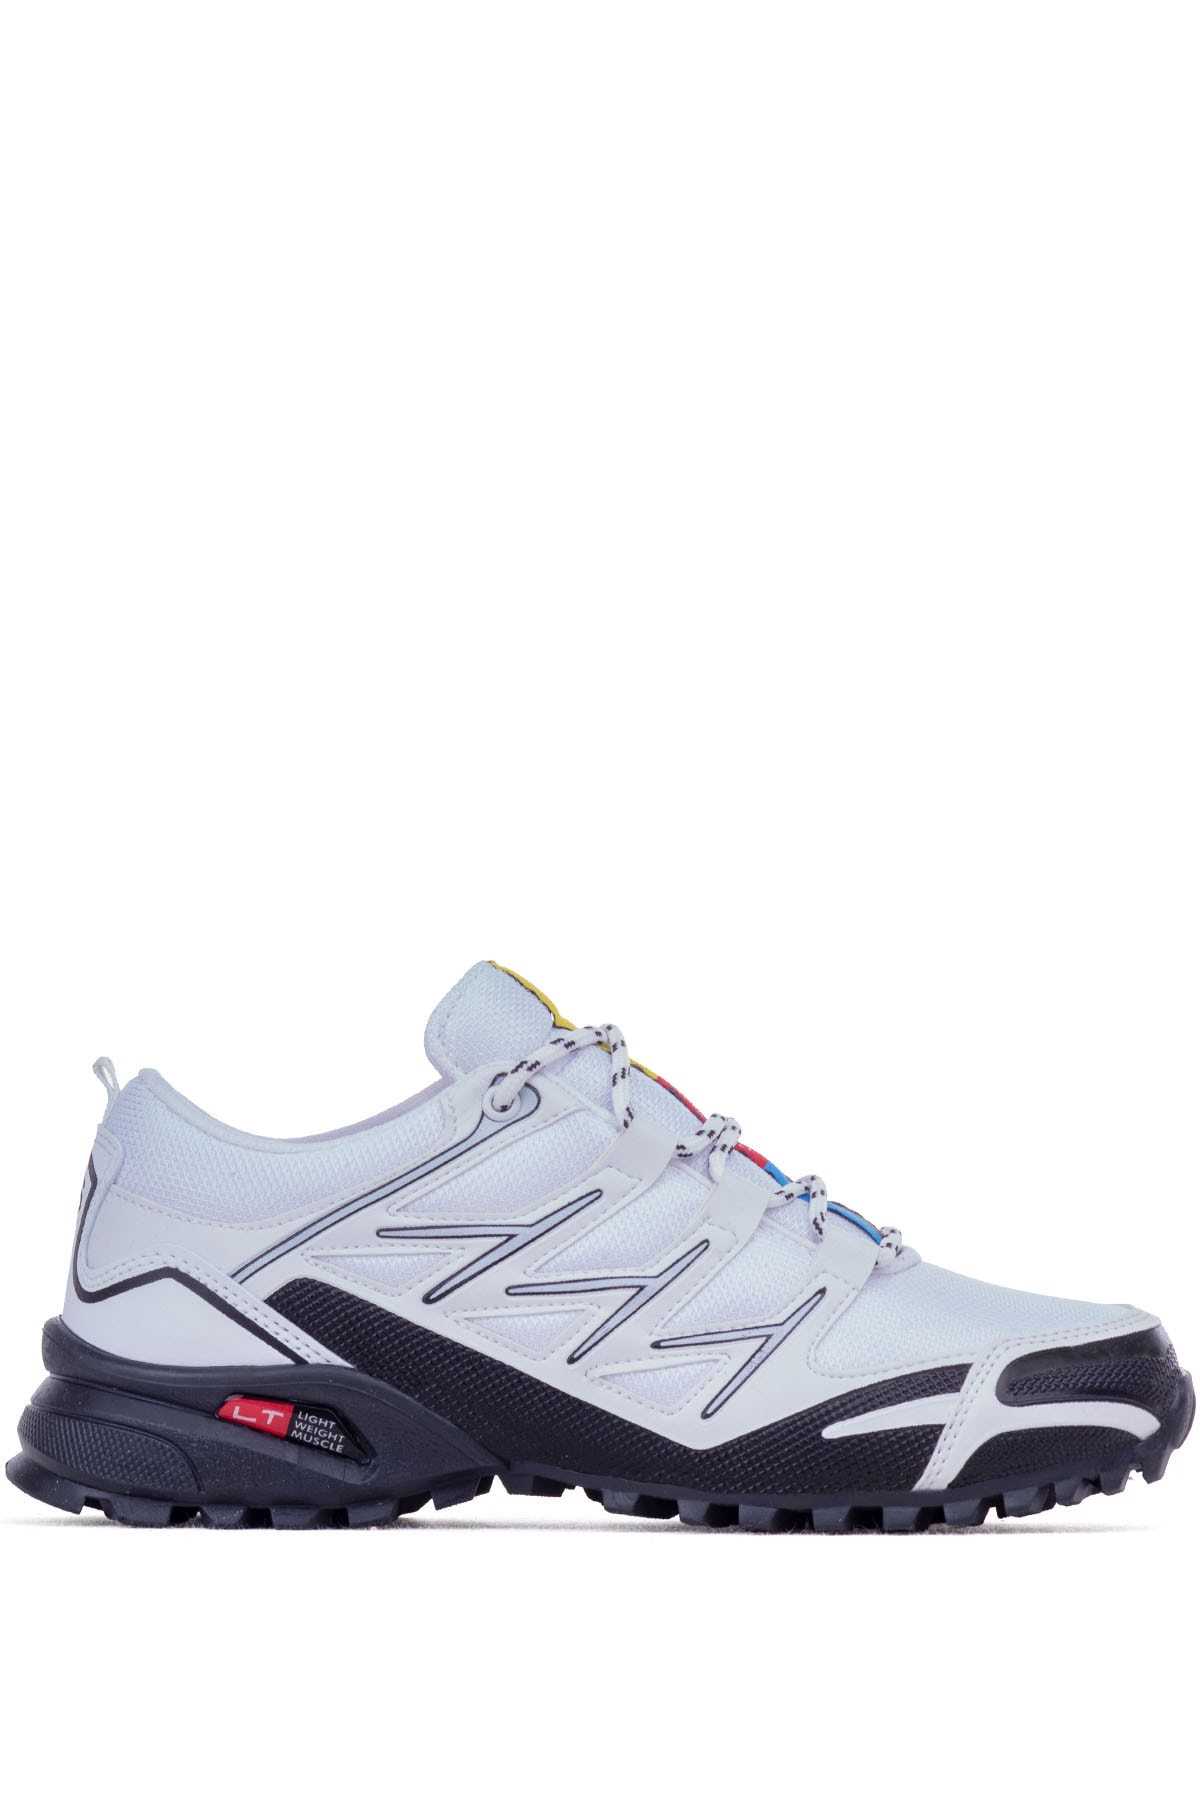 فروش کفش مخصوص پیاده روی مردانه ترک مجلسی برند Ghattix رنگ سفید ty236469414